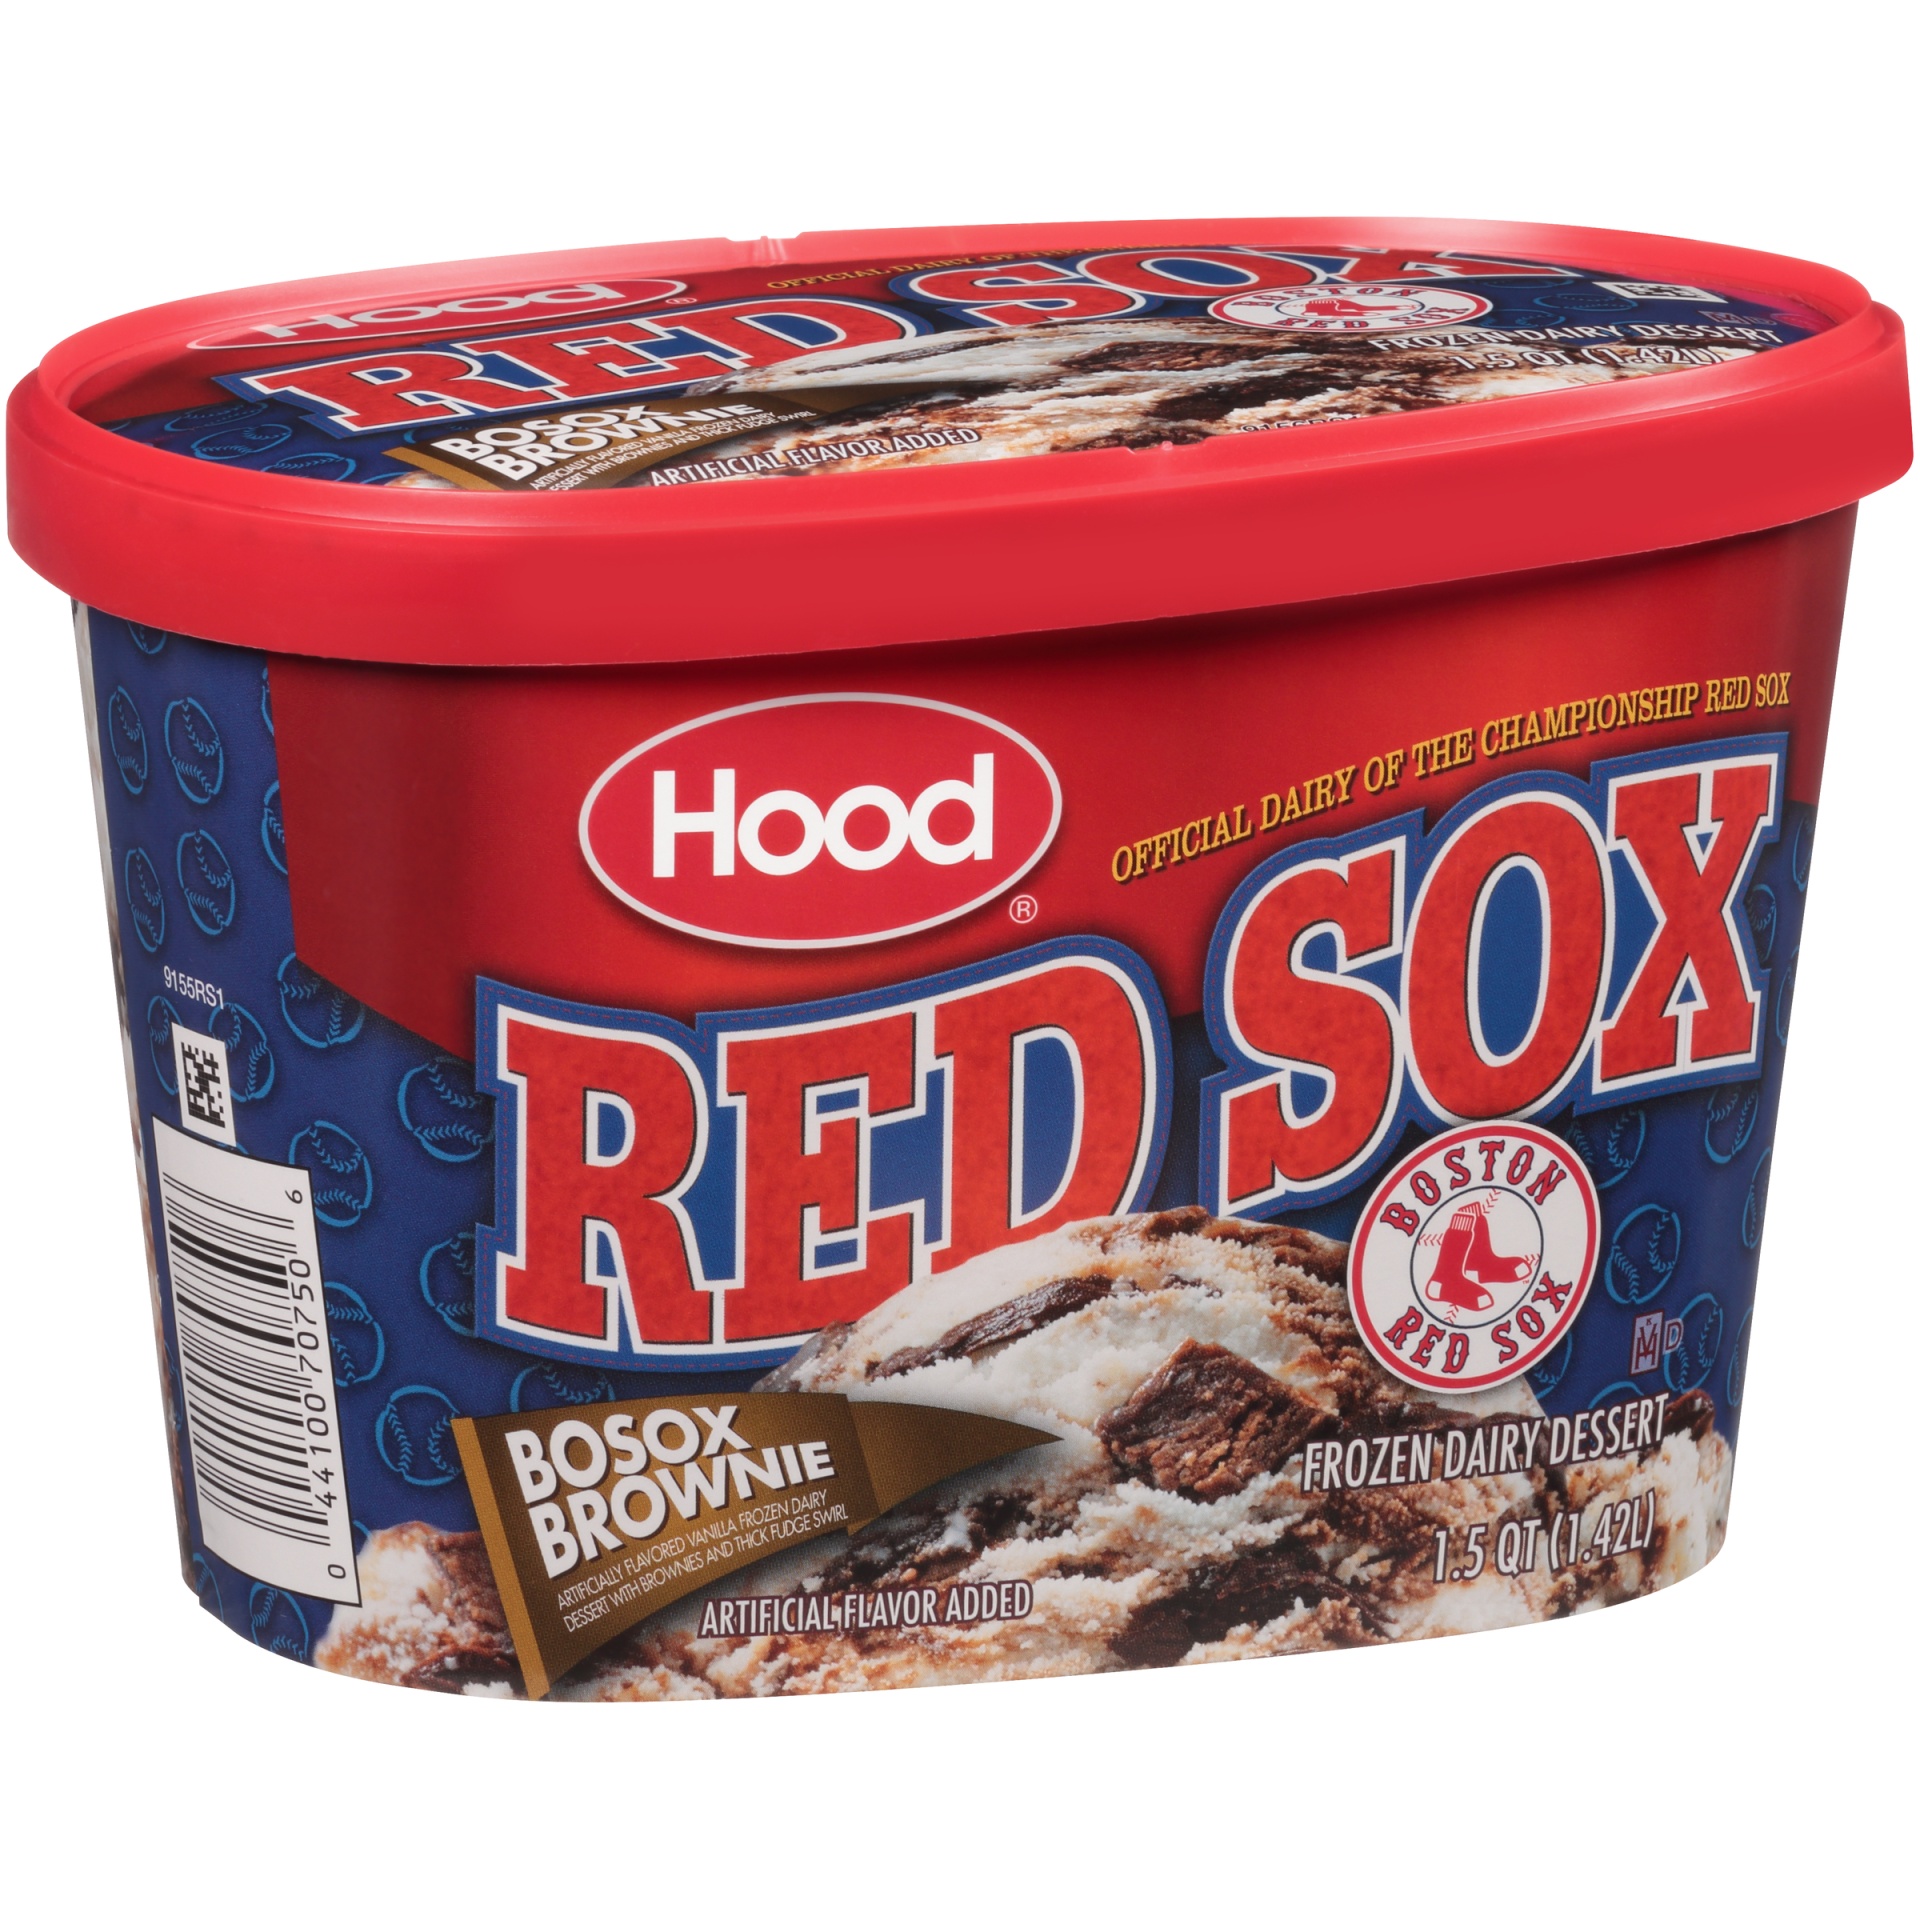 slide 2 of 7, Hood Red Sox Bosox Brownie Frozen Dairy Dessert, 1.5 qt